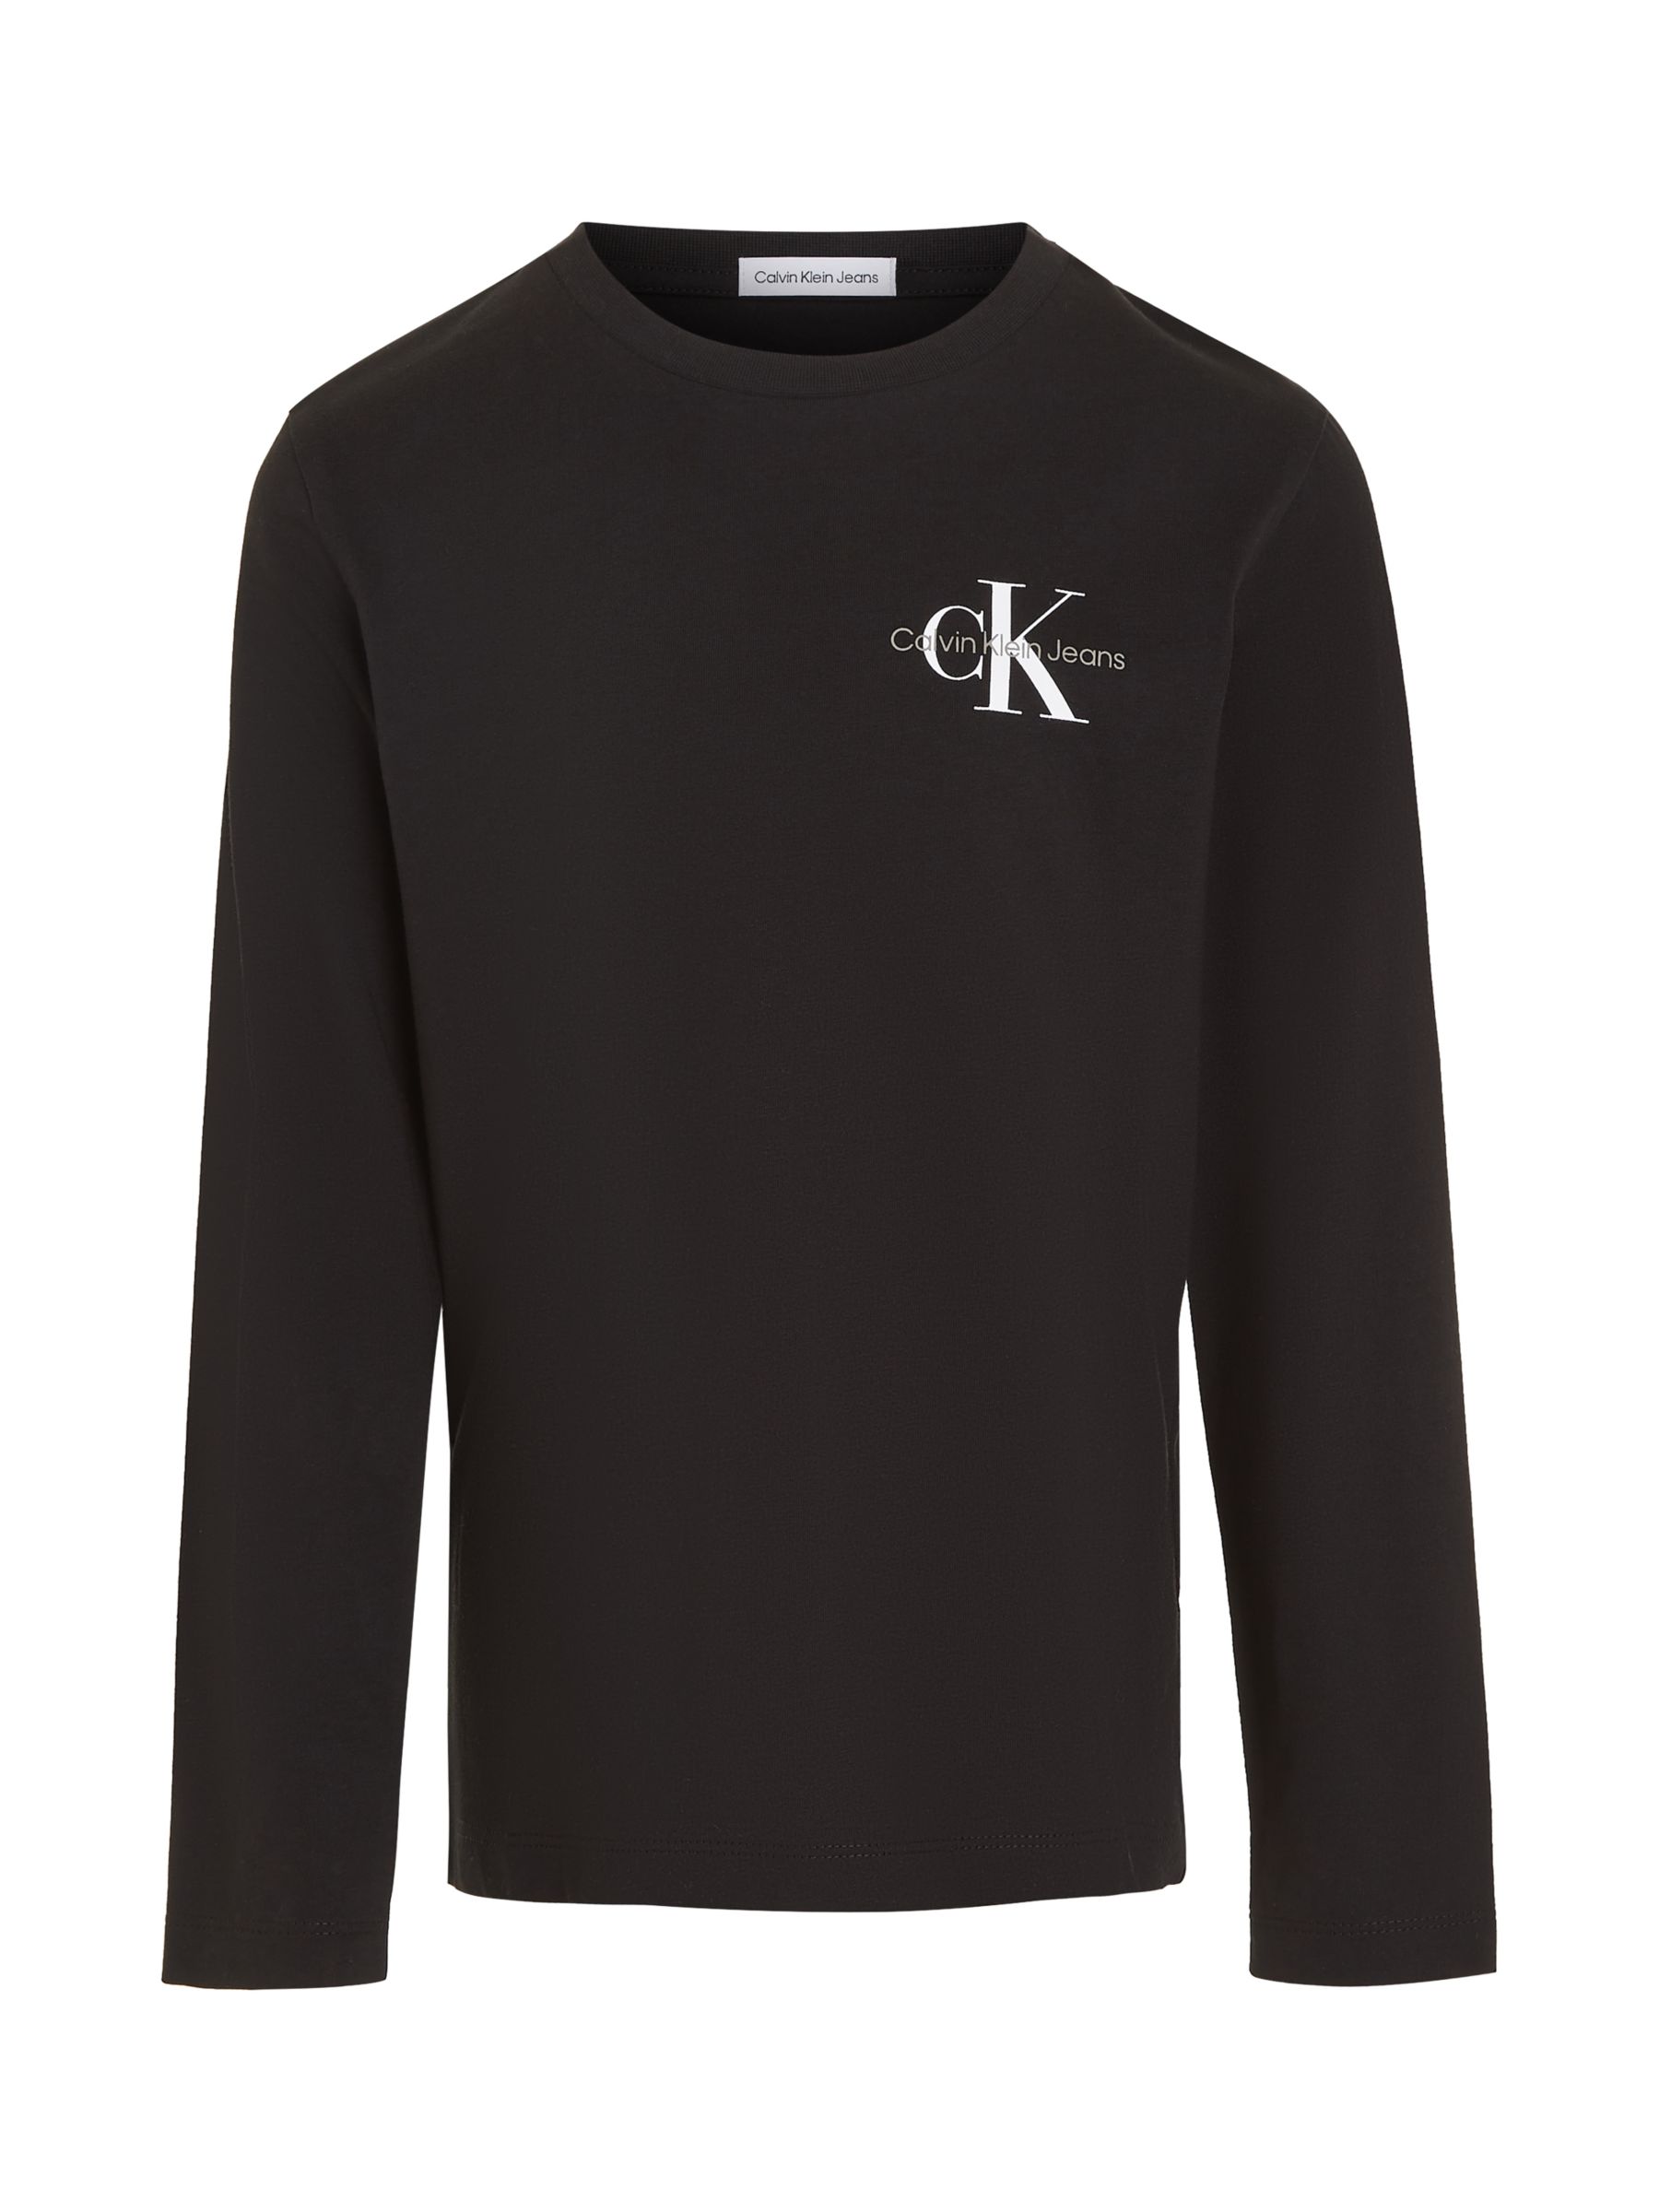 Calvin Klein Kids' Monogram Long Sleeve T-Shirt, Ck Black at John Lewis ...